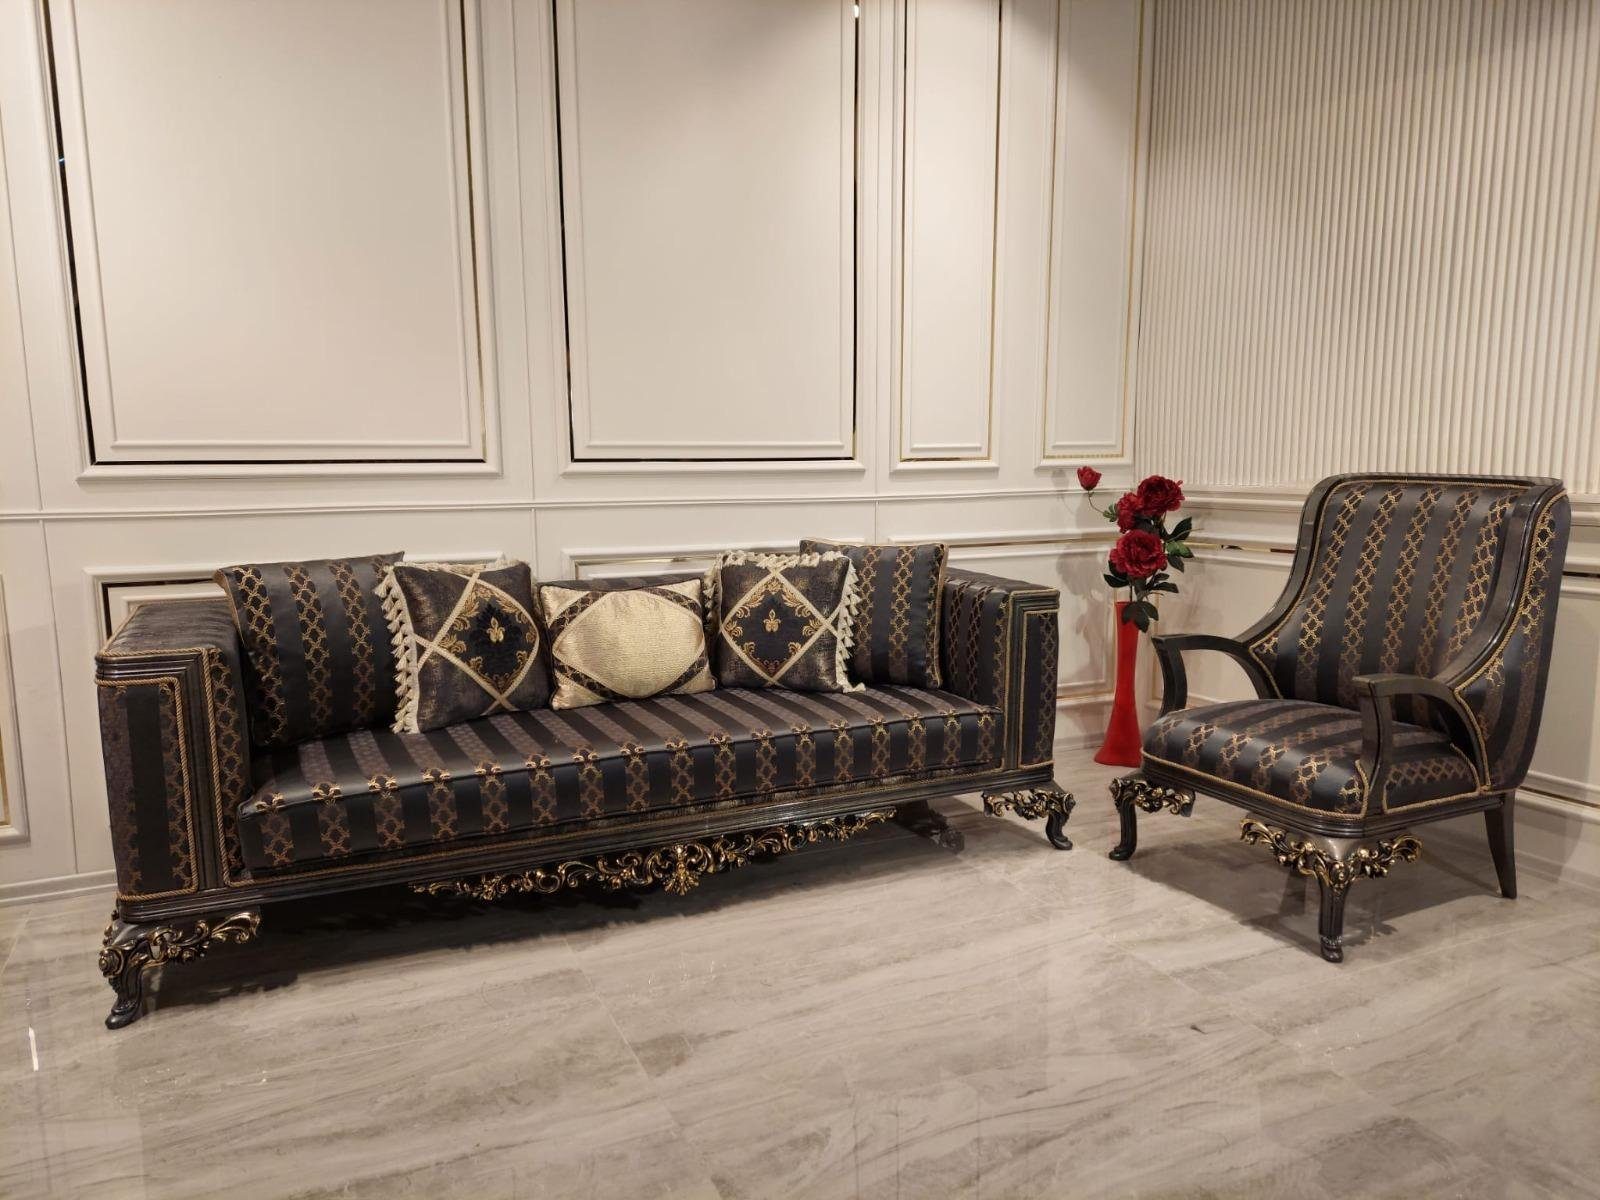 JVmoebel Sofa, Klassische braune Sofagarnitur 3+1 Sitzer luxus Möbel Set